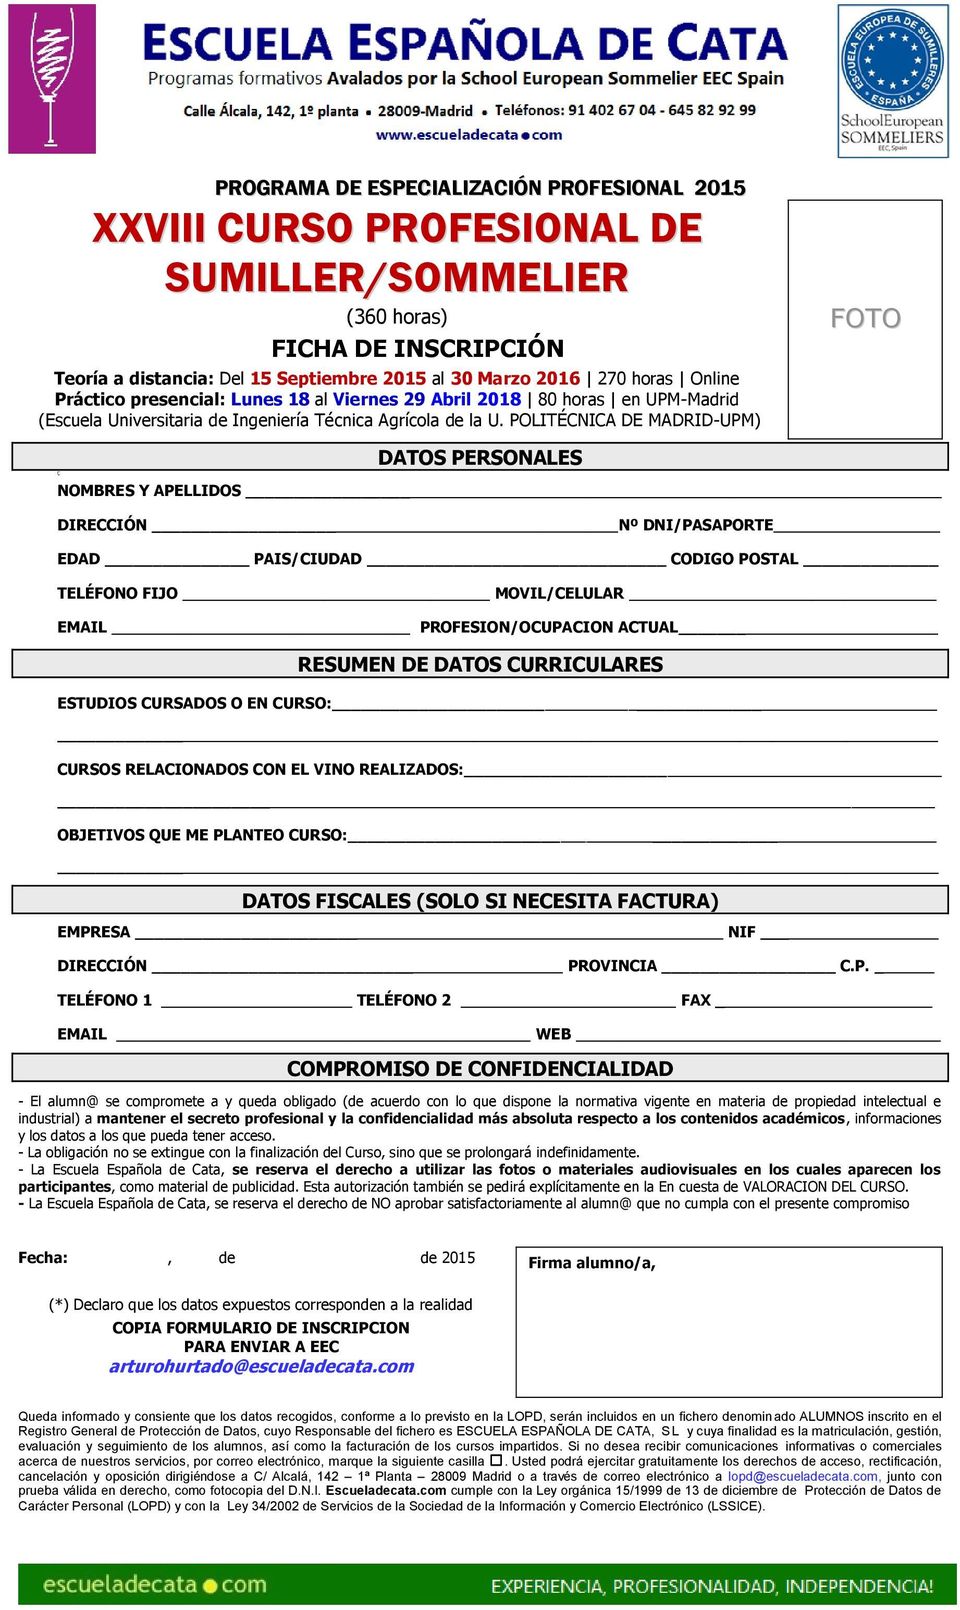 POLITÉCNICA DE MADRID-UPM) FOTO Ç DATOS PERSONALES NOMBRES Y APELLIDOS DIRECCIÓN Nº DNI/PASAPORTE EDAD PAIS/CIUDAD CODIGO POSTAL TELÉFONO FIJO MOVIL/CELULAR EMAIL PROFESION/OCUPACION ACTUAL RESUMEN